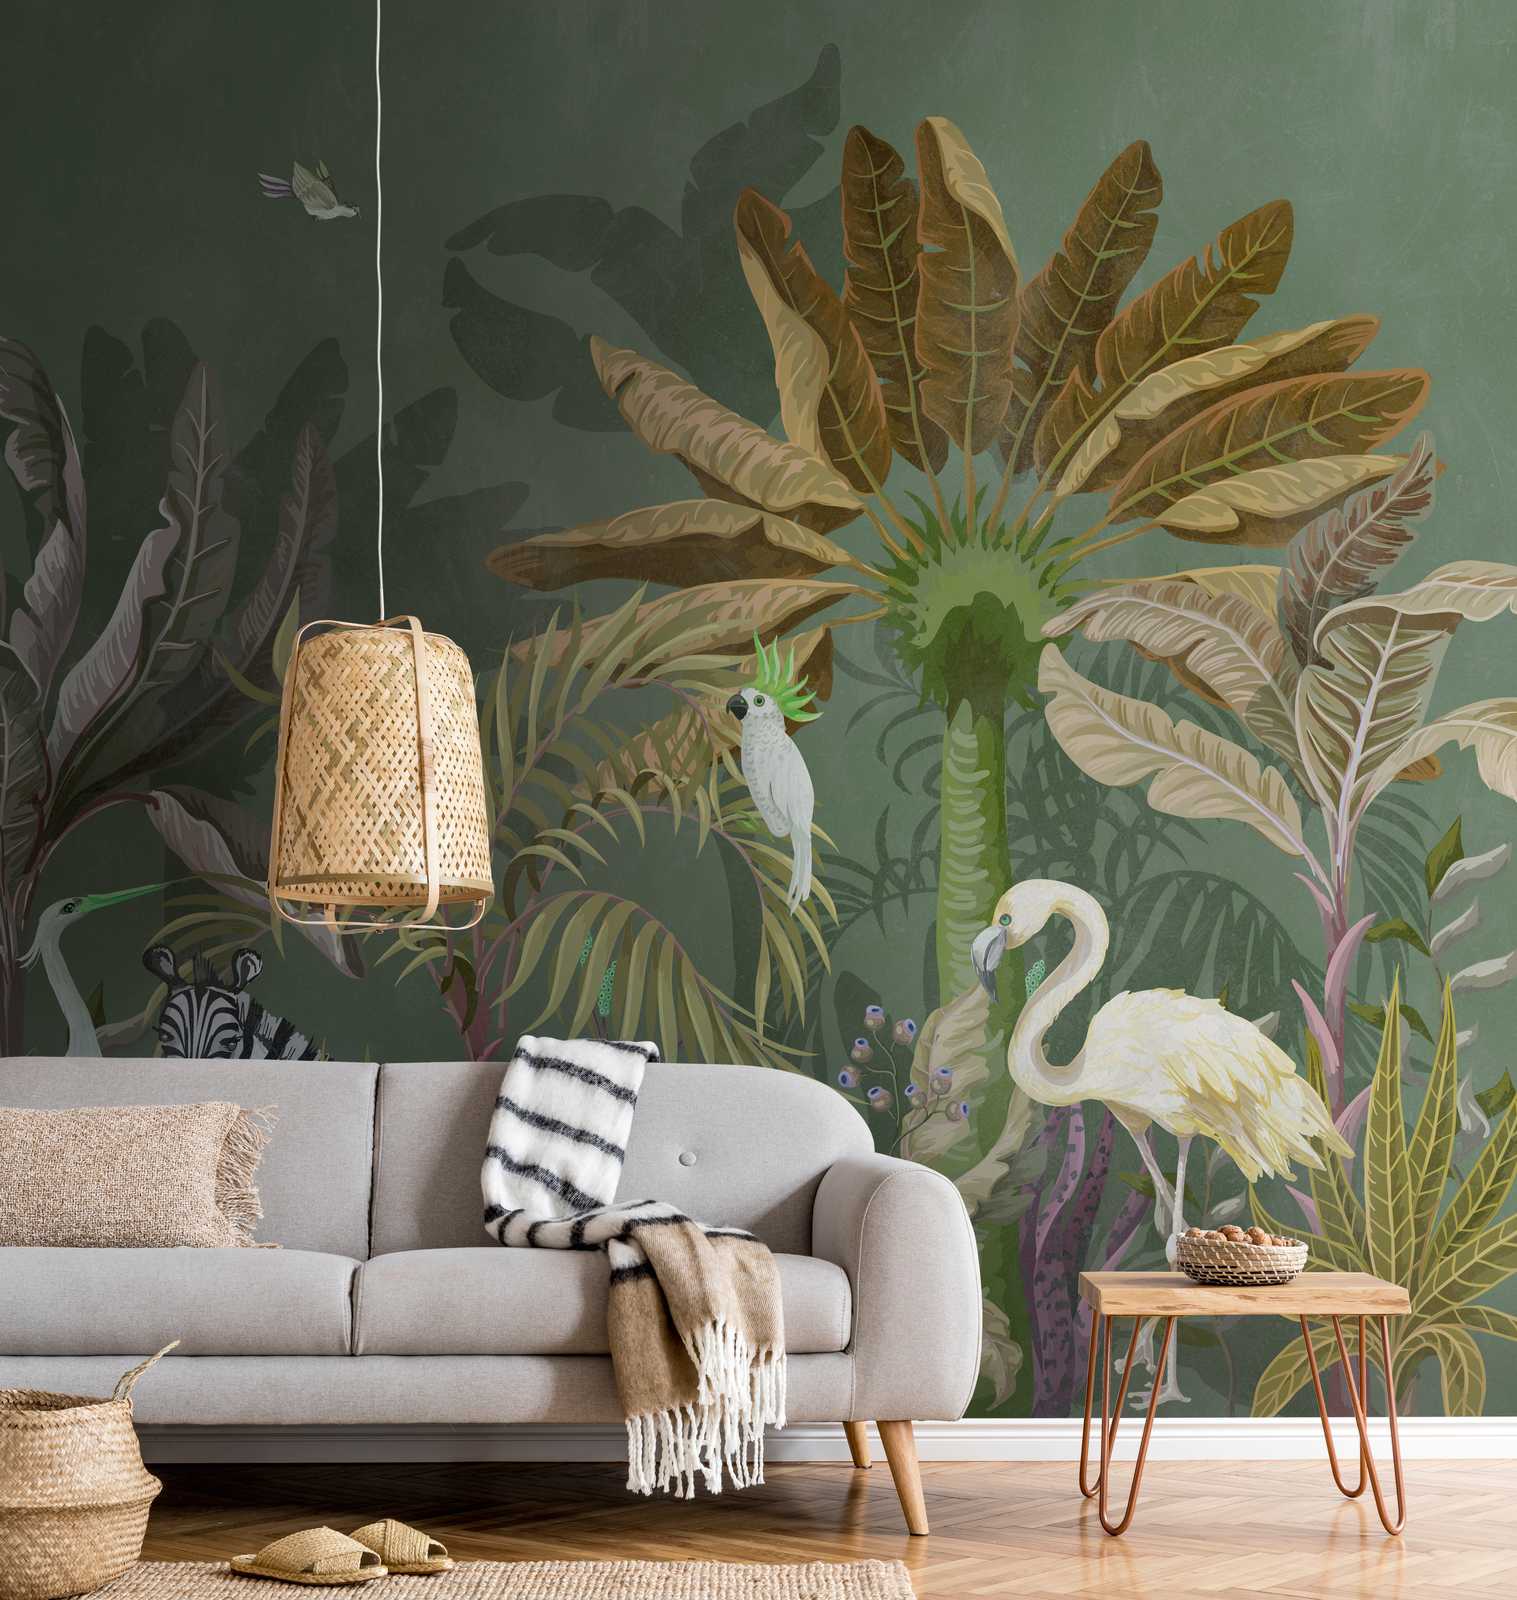             Nouveauté papier peint | jungle papier peint motif animaux & plantes
        